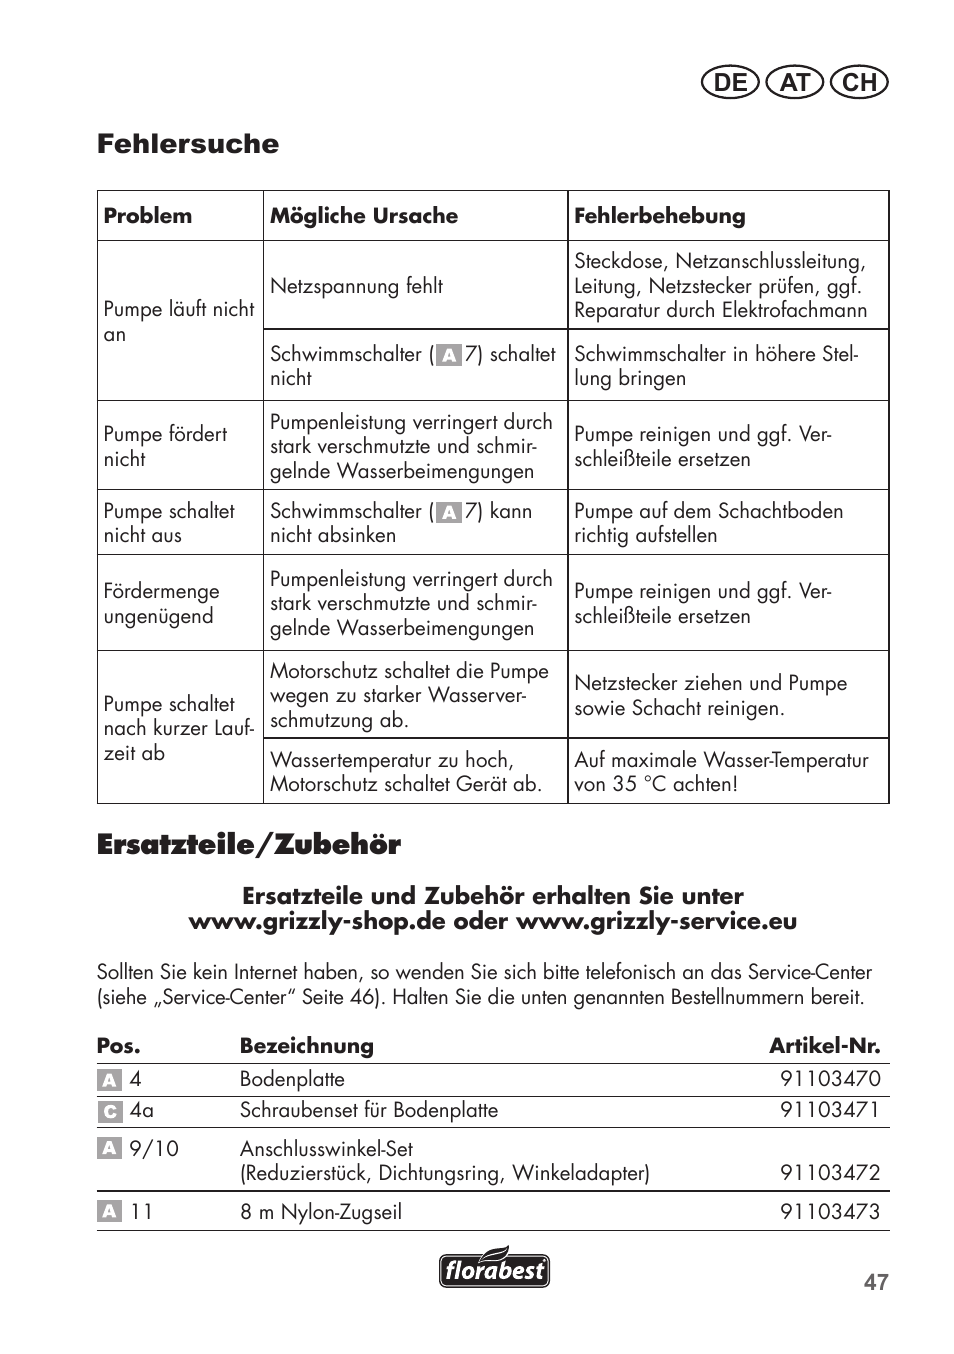 Fehlersuche, Ersatzteile/zubehör, De at ch | Florabest FTS 1100 C3 User  Manual | Page 47 / 50 | Original mode